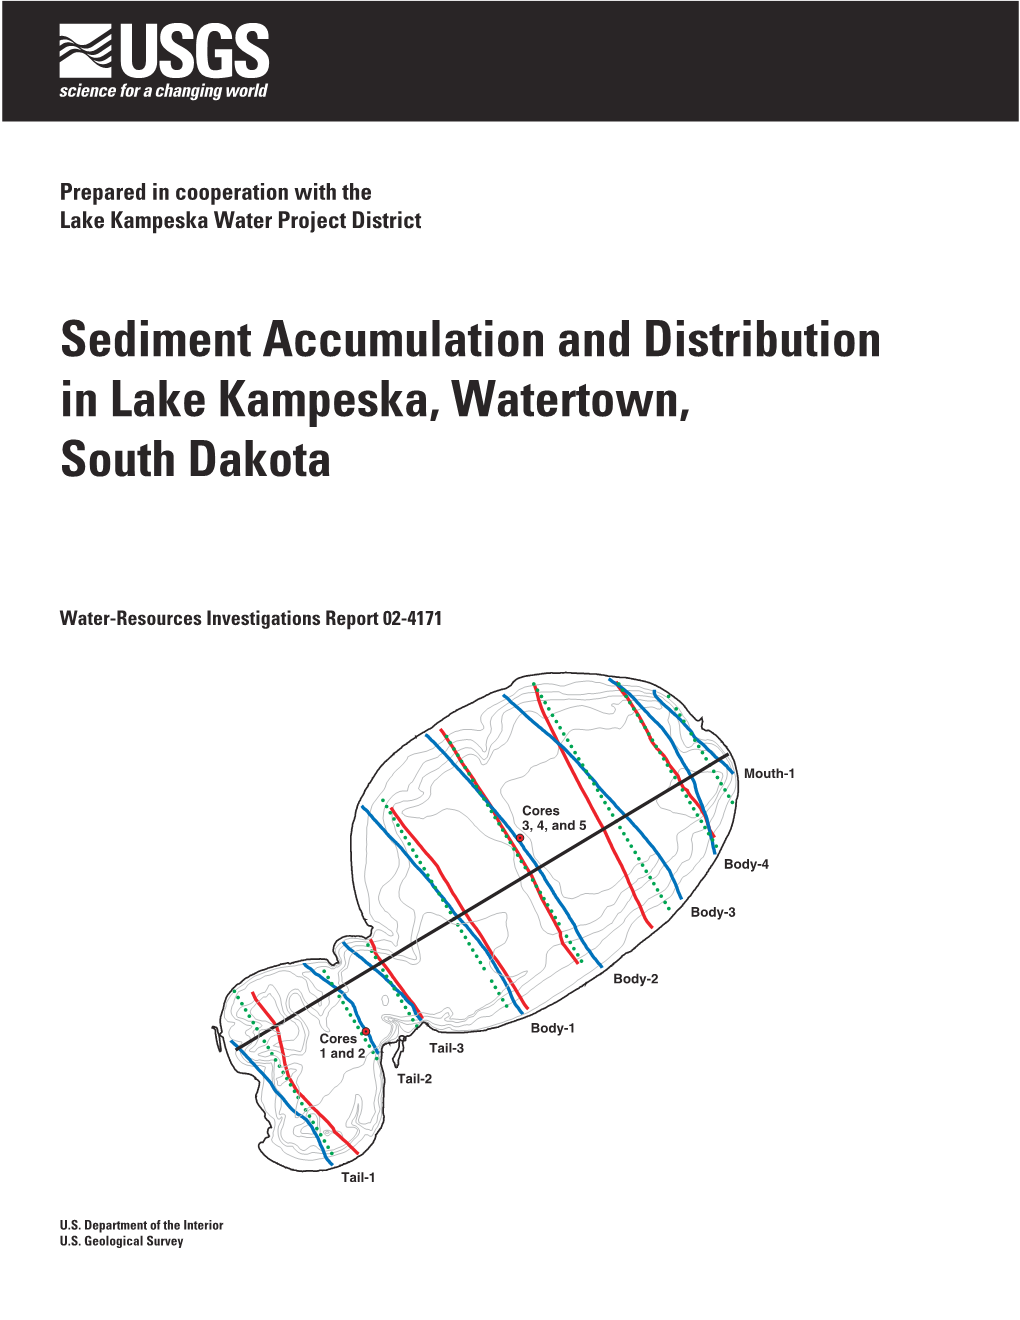 Sediment Accumulation and Distribution in Lake Kampeska, Watertown, South Dakota